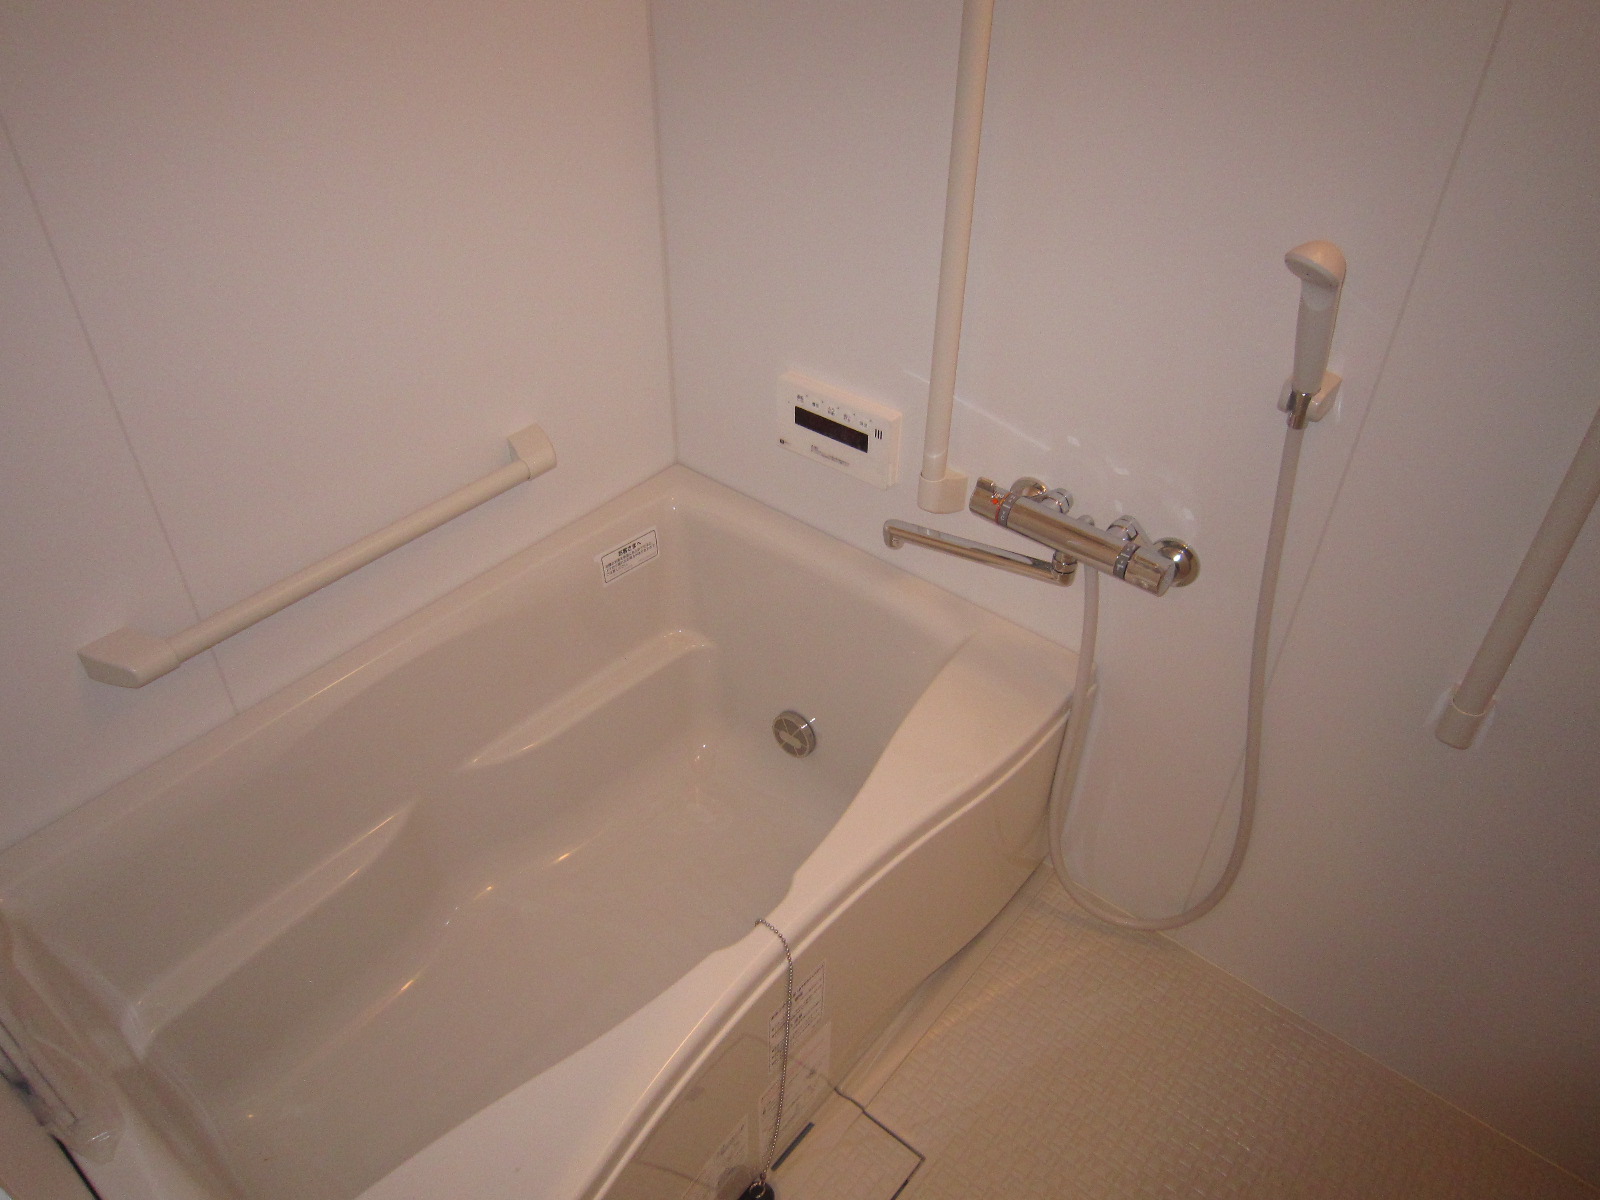 Bath. Bathroom Dryer Add-fired with function